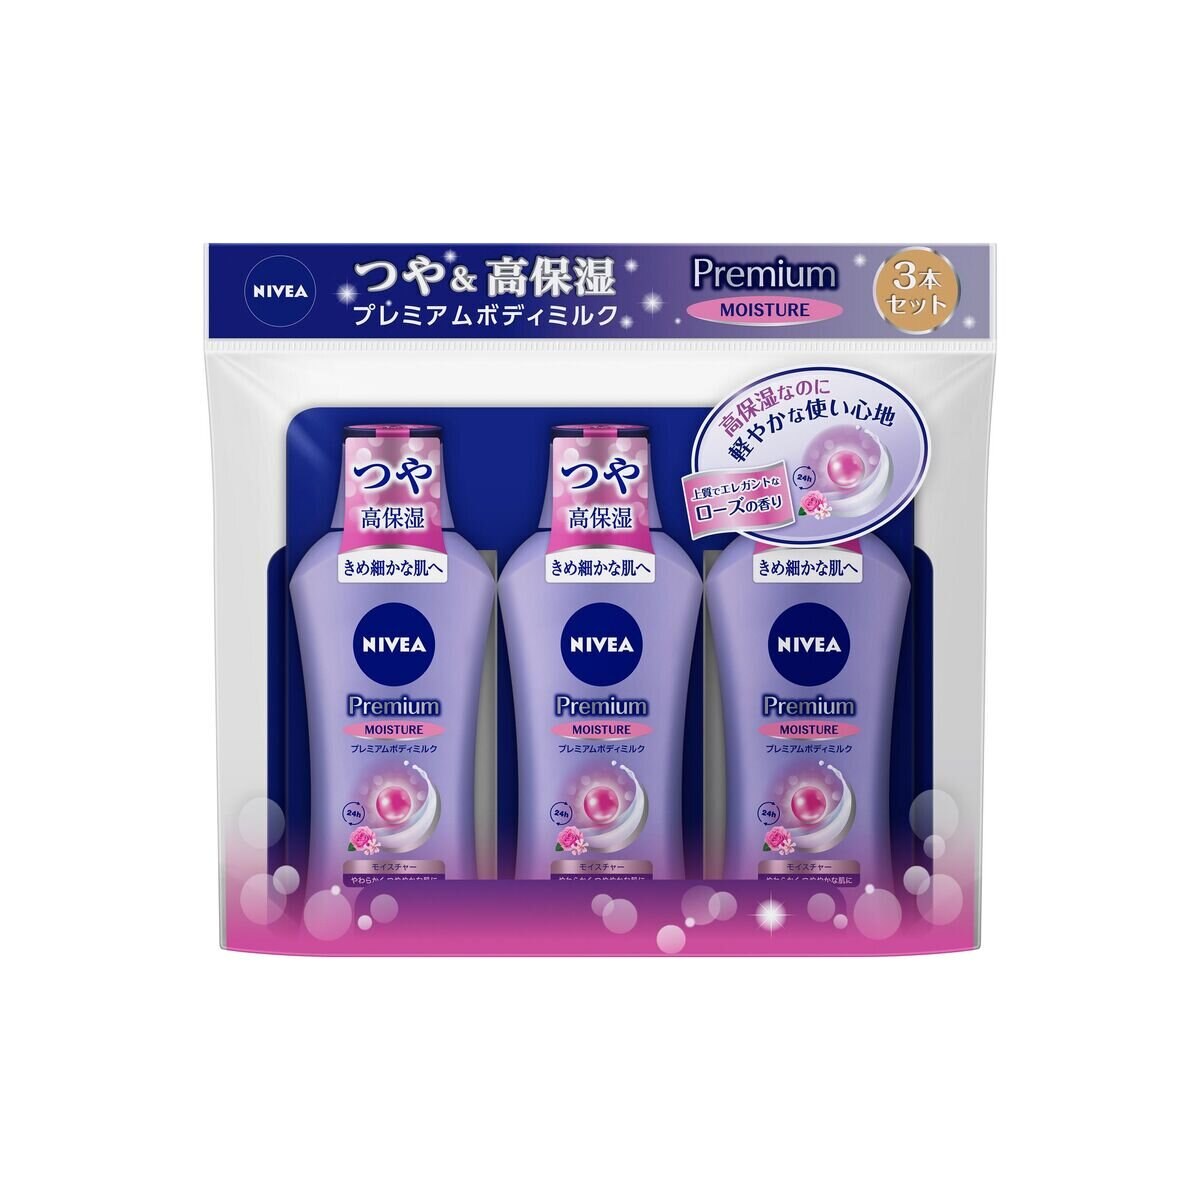 ニベア プレミアムボディミルク モイスチャー 200g x 3本セット | Costco Japan